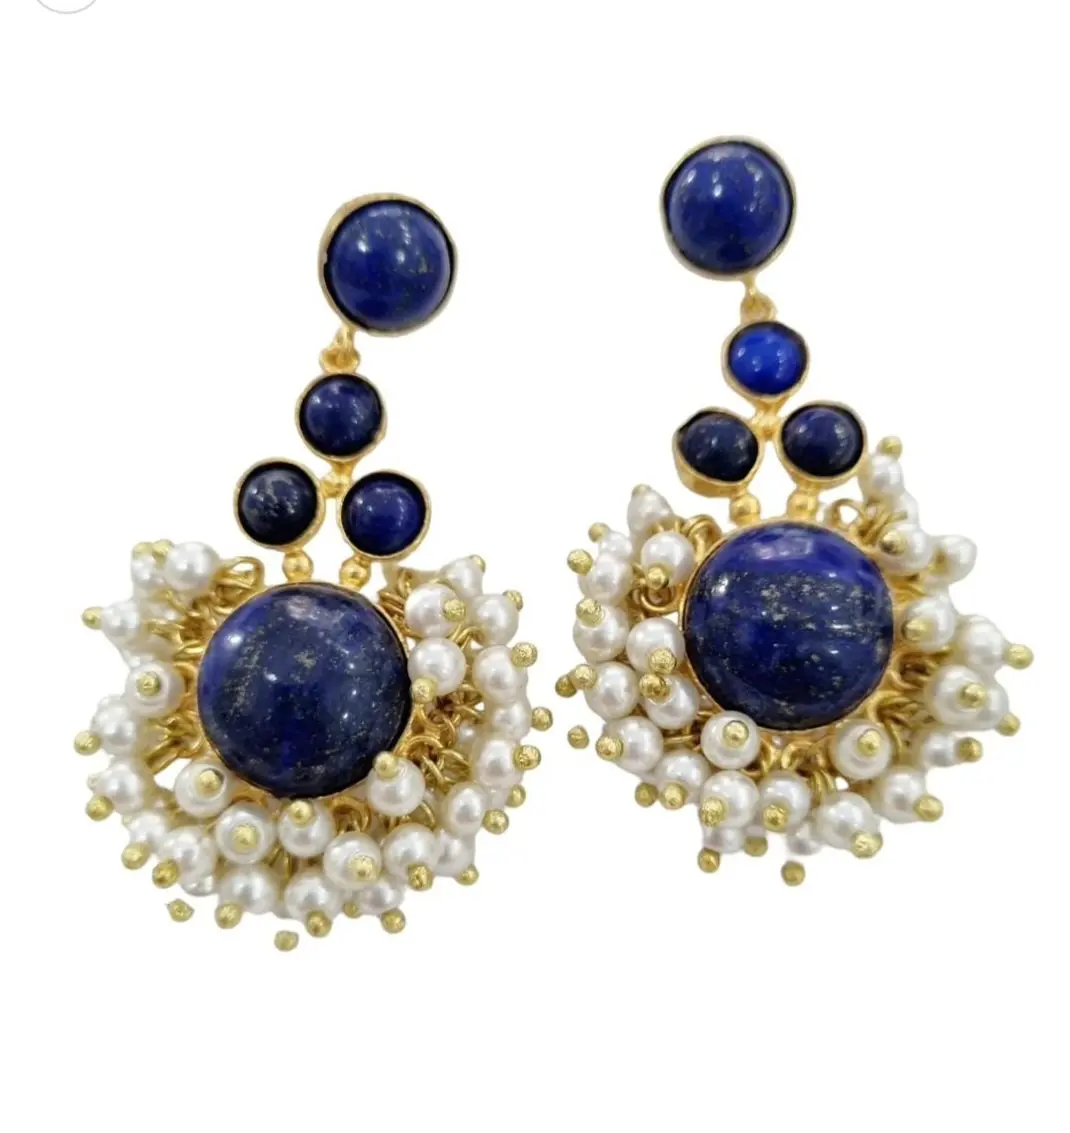 Ohrringe aus Lapislazuli und Mallorca-Perlen mit Messing, Länge 6 cm, Gewicht 17,6 g